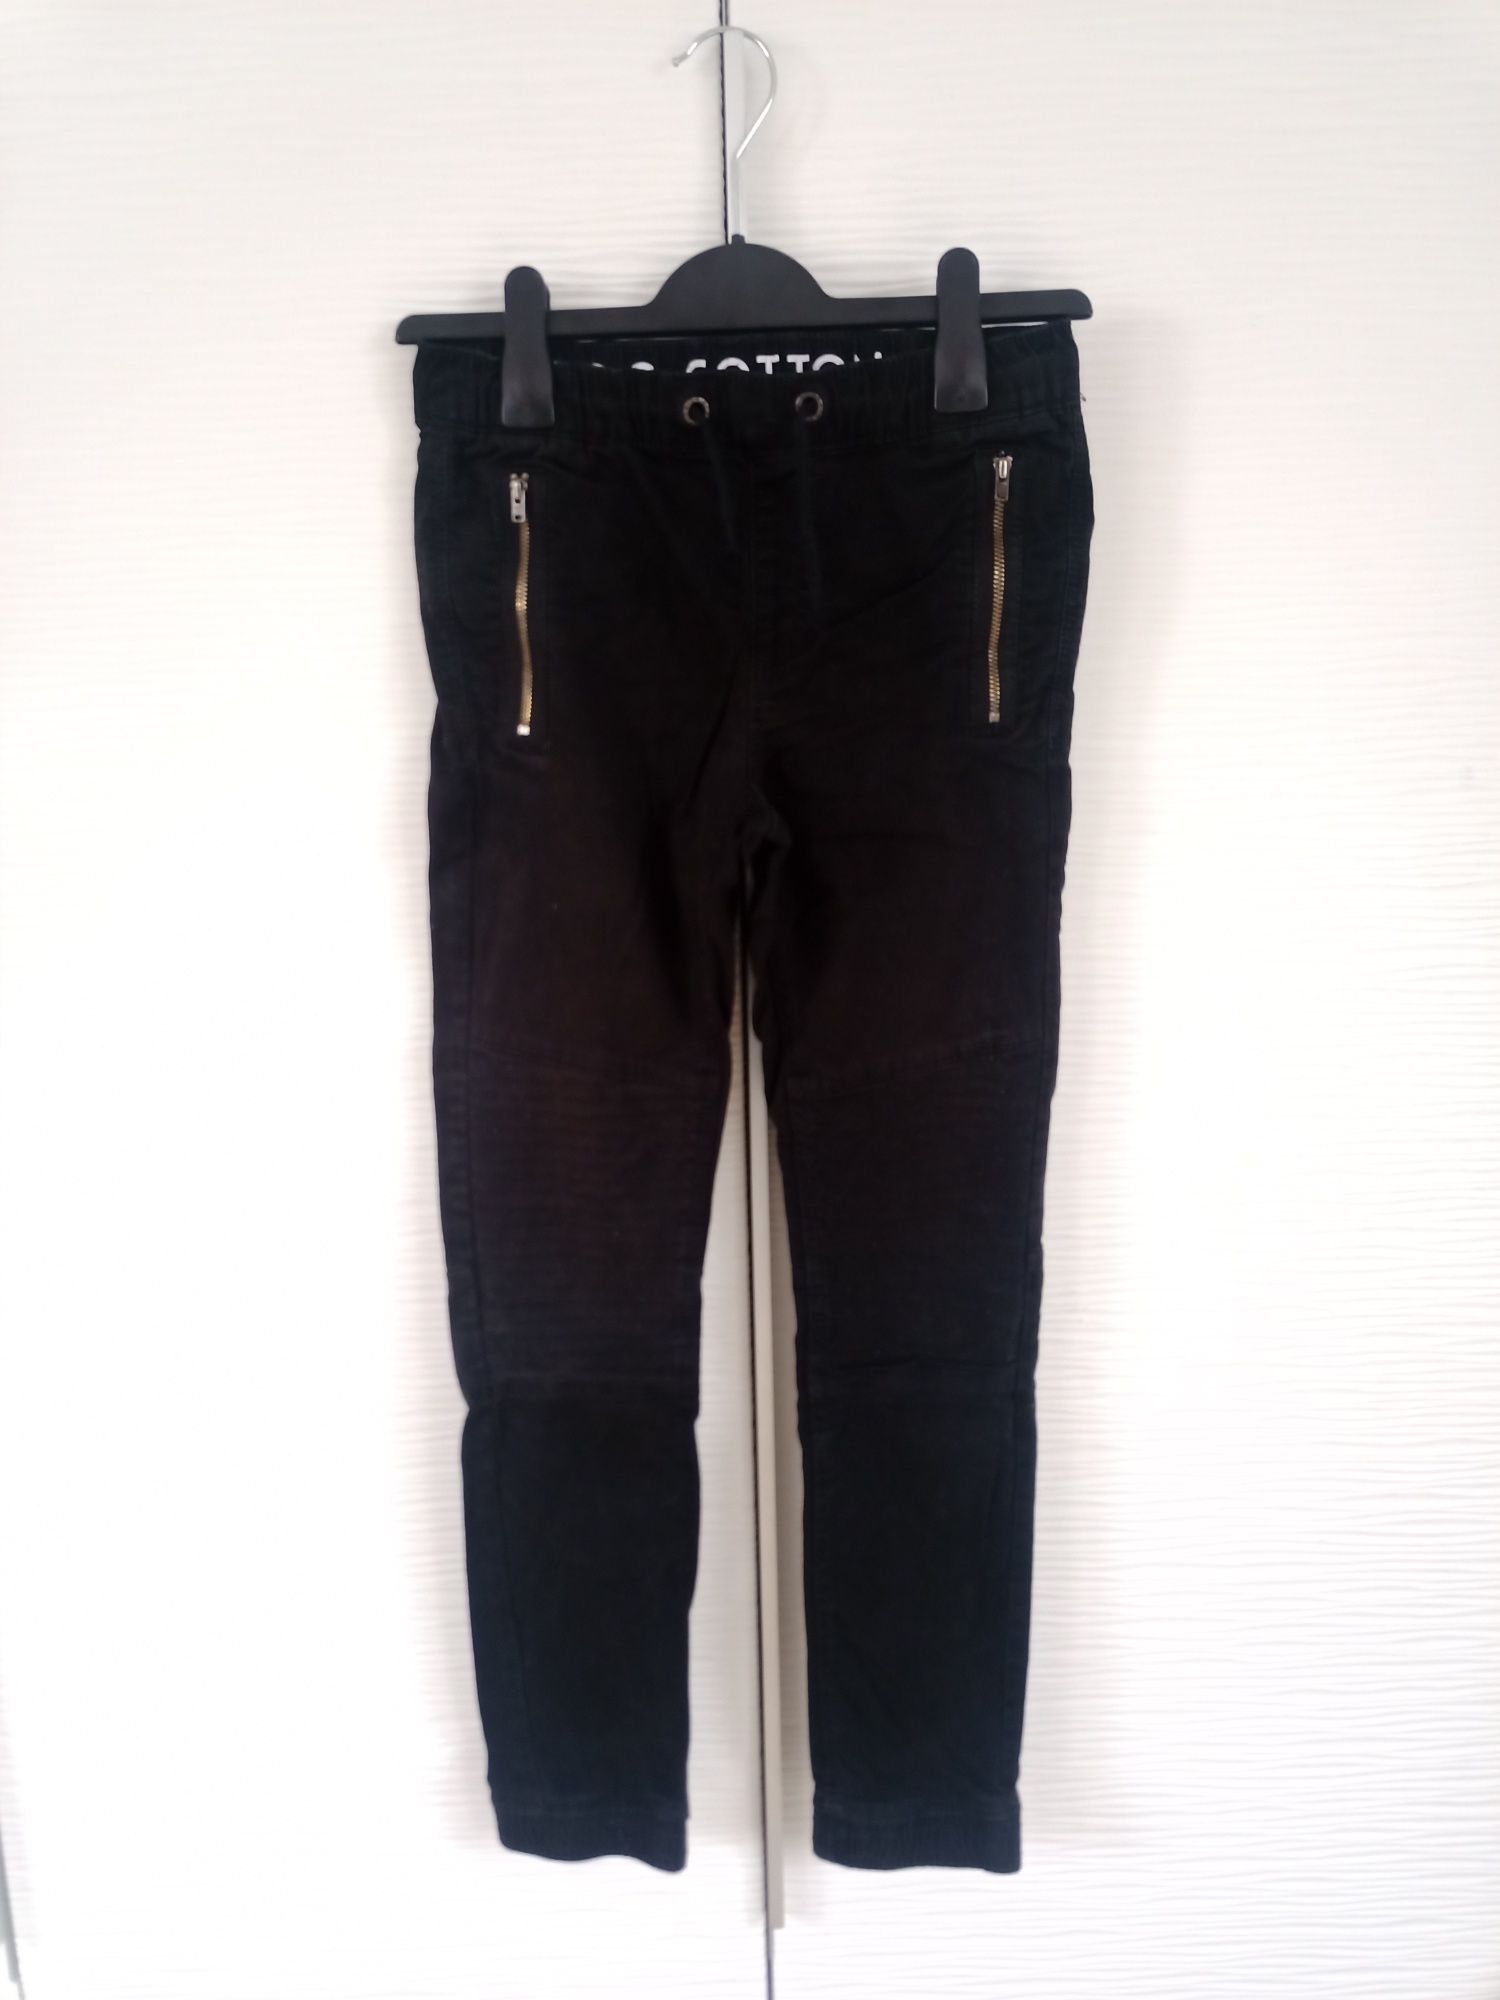 Spodnie dla chłopca C&A, czarne, rozm. 146cm, Jog Cotton + GRATIS